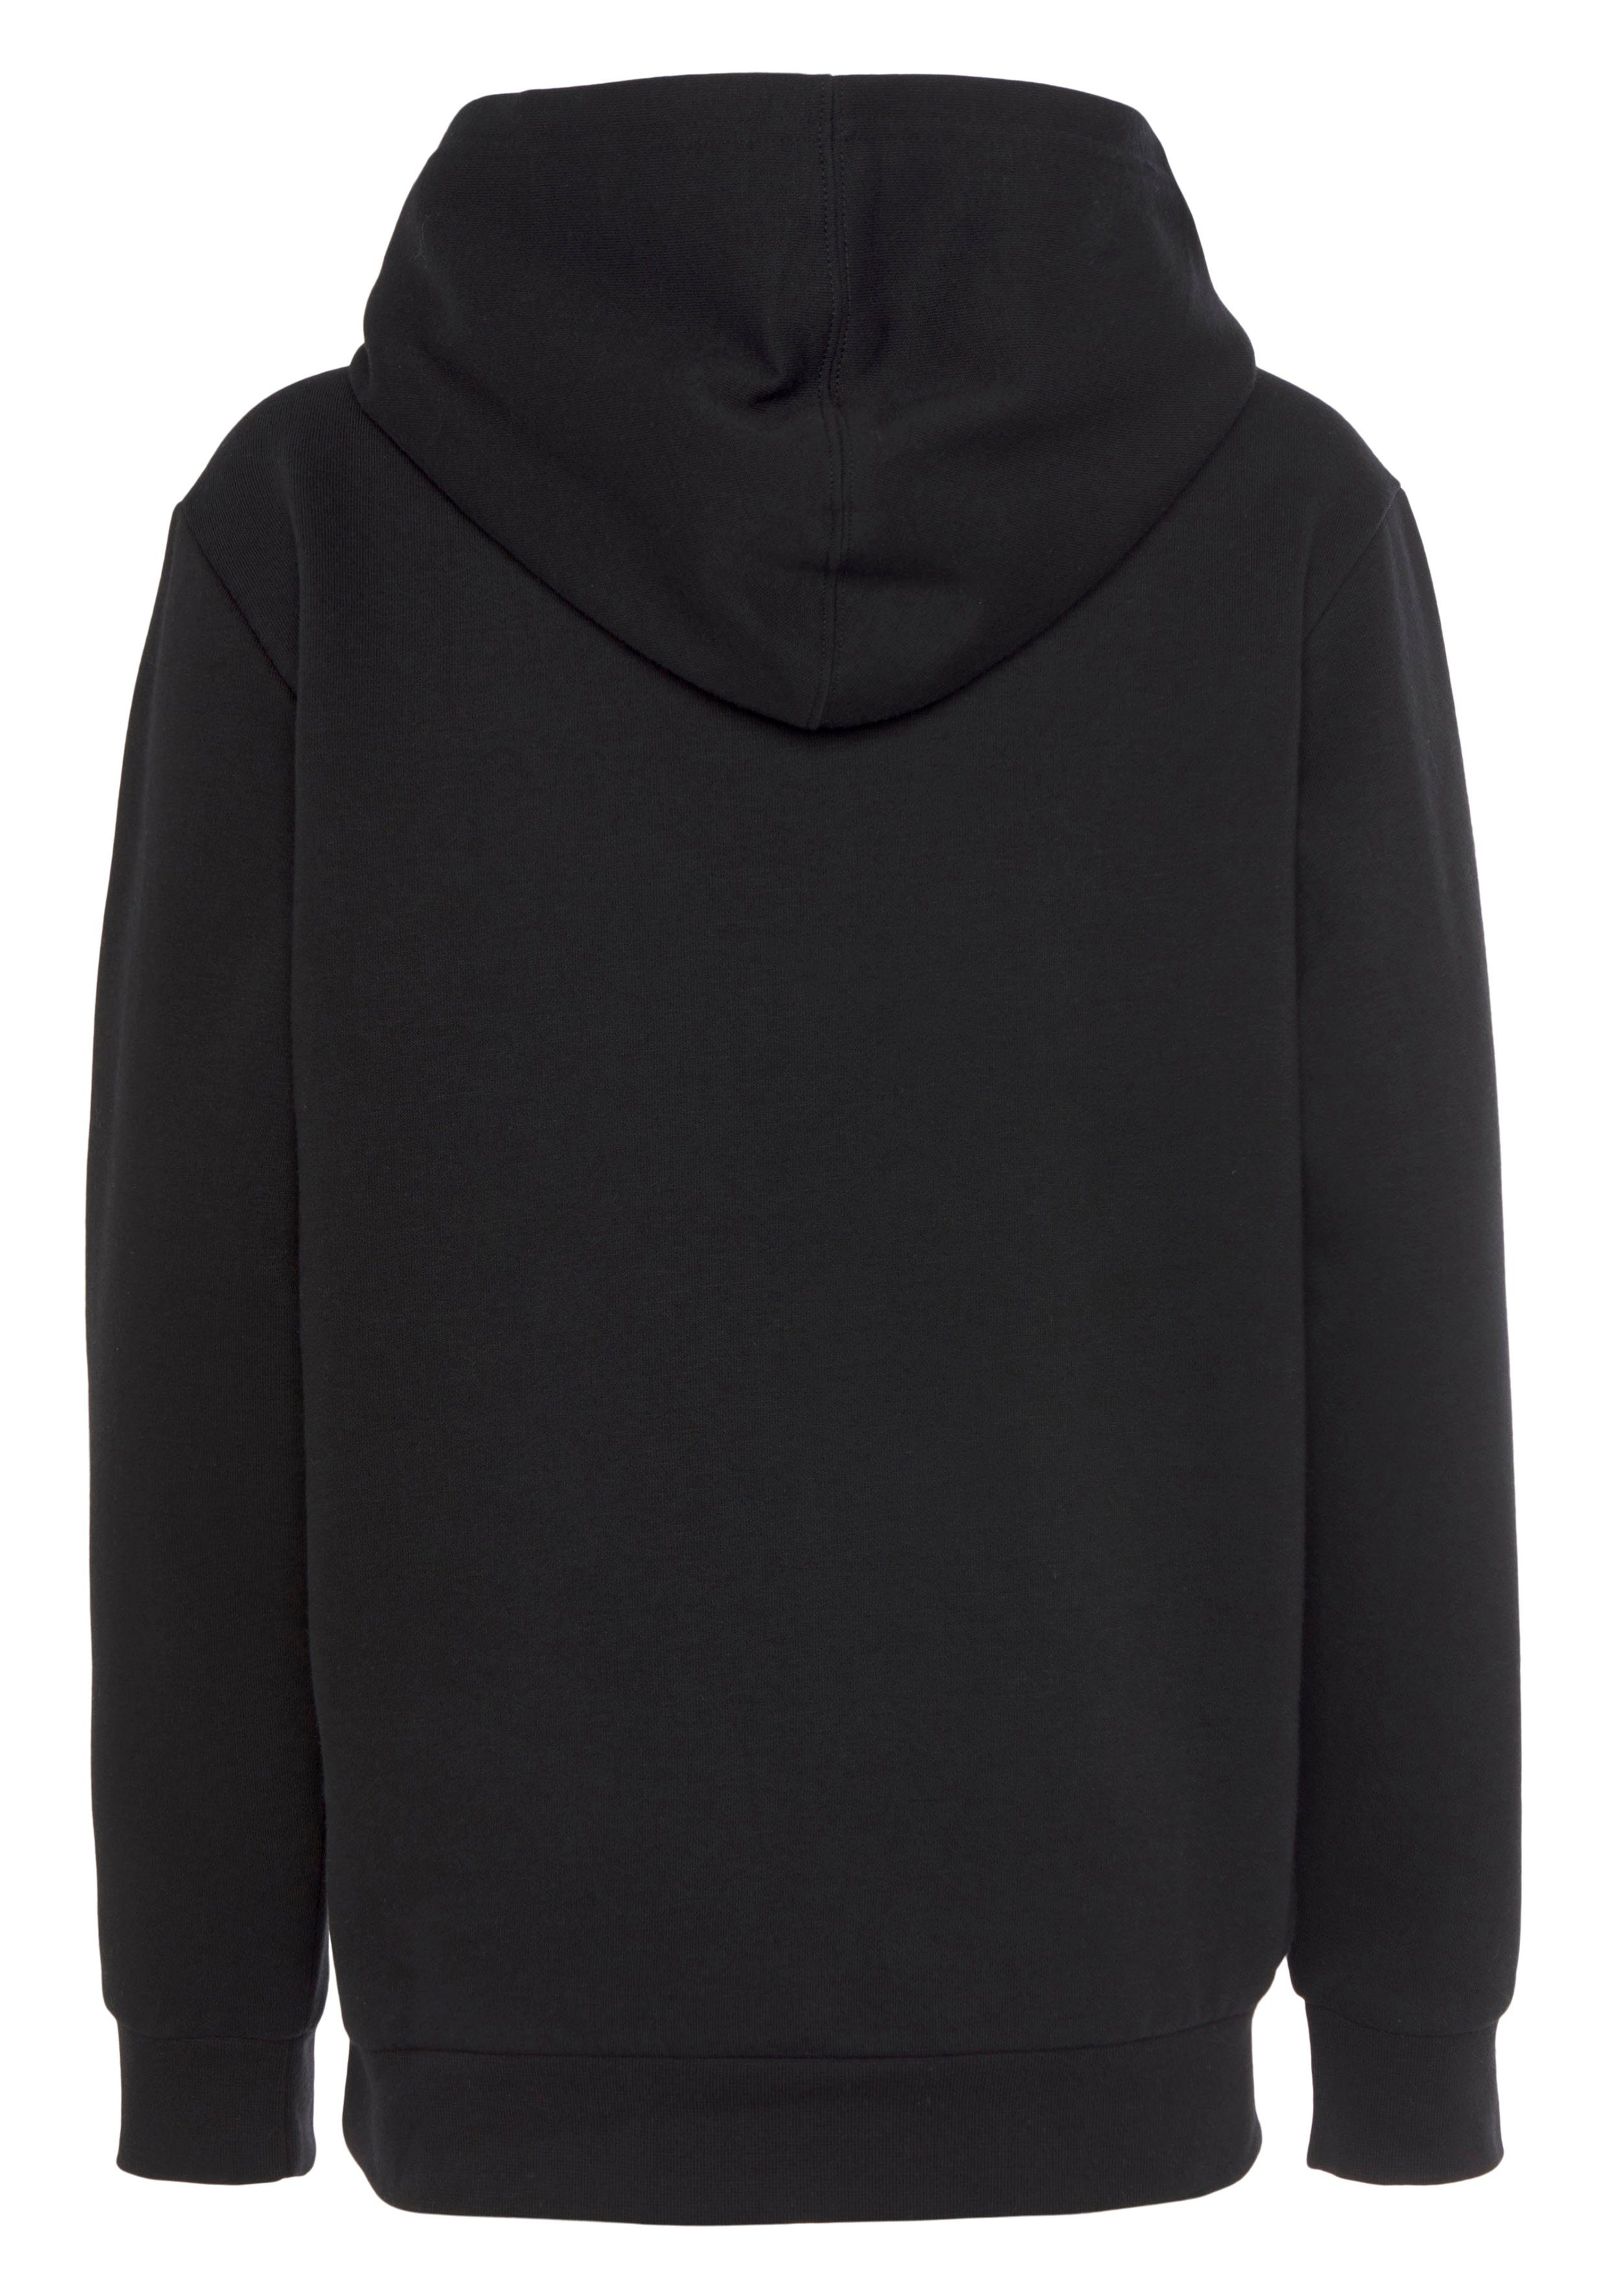 - Kinder Sweatshirt Basic für schwarz Hooded Champion Sweatshirt